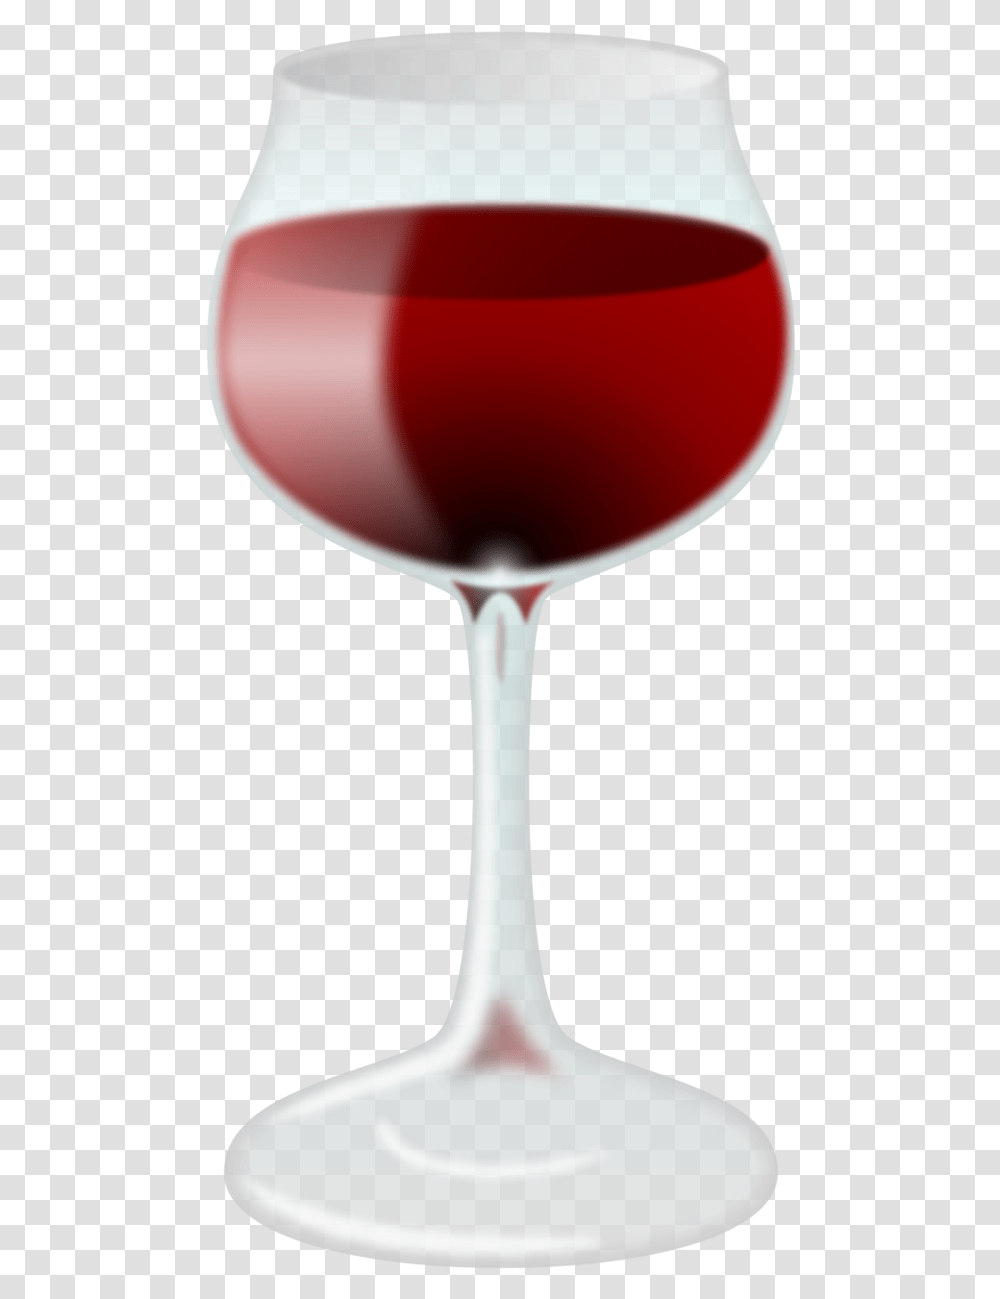 Emoji Wine Glass, Alcohol, Beverage, Drink, Red Wine Transparent Png